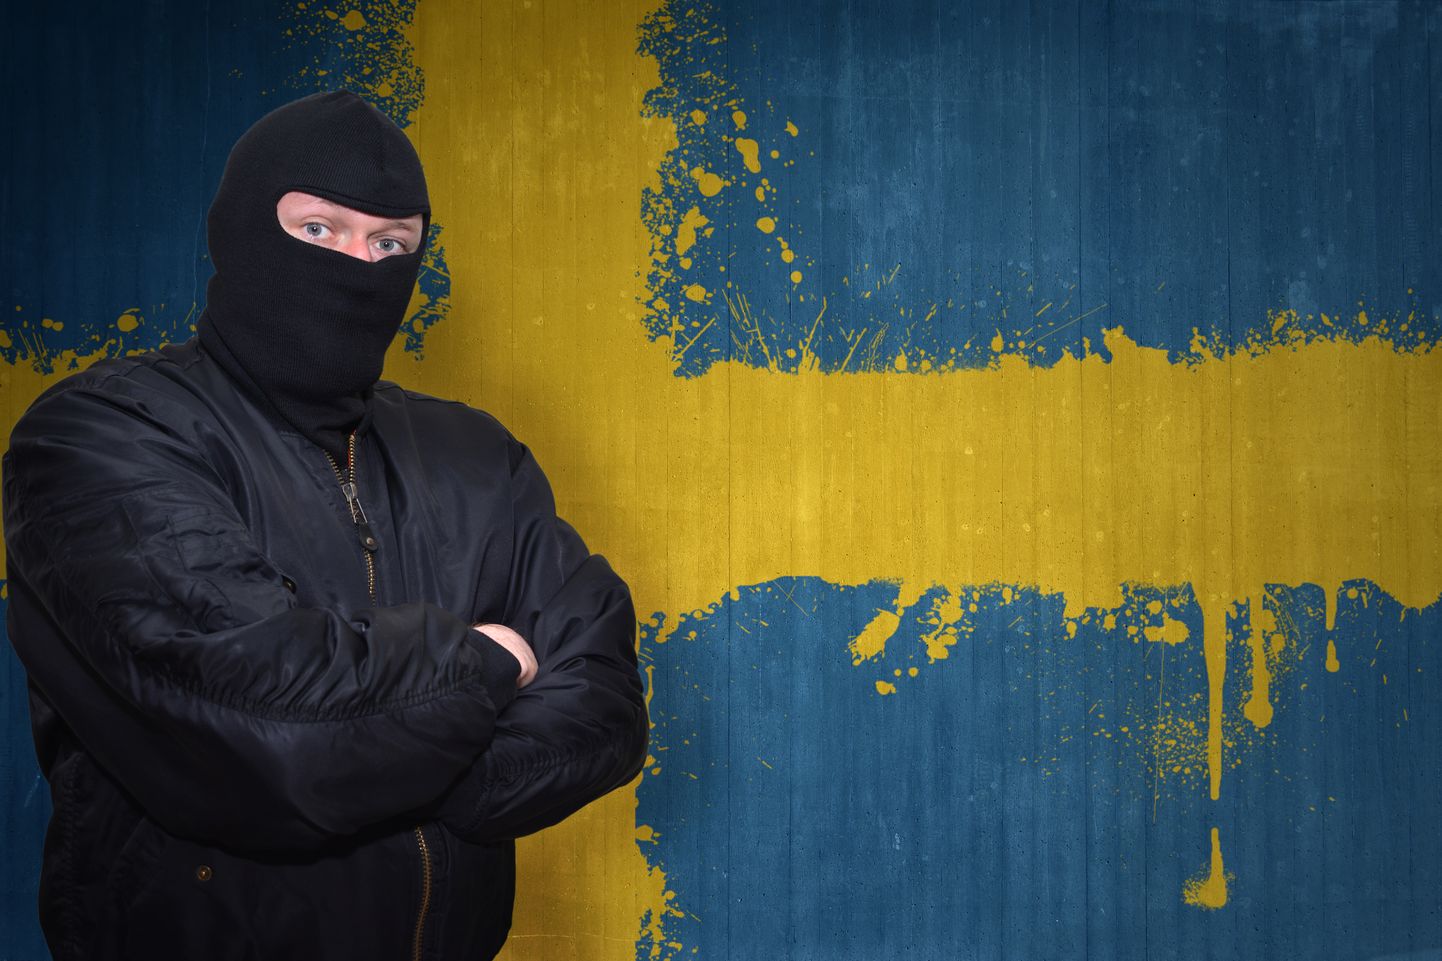 Ohtliku välimusega mees ja seinale joonistatud Rootsi lipp. Pilt on illustreeriv.